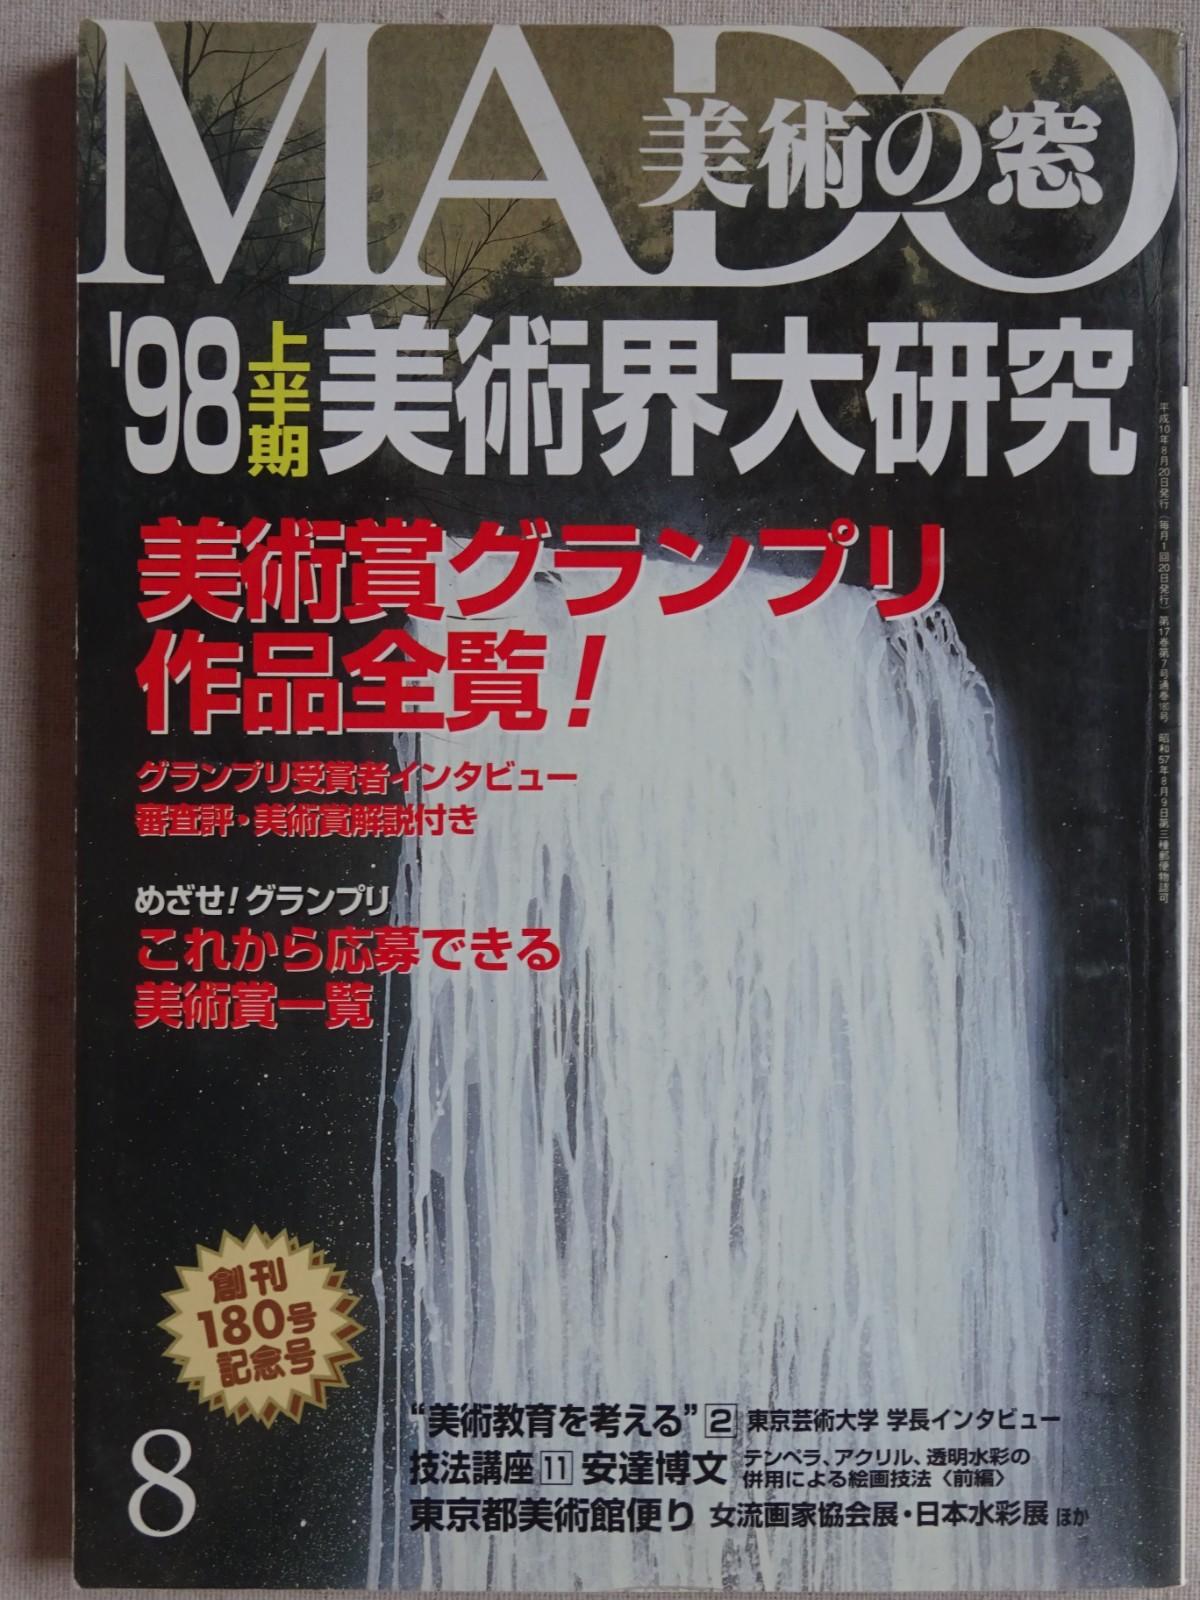 Mochizuki,　Noriko　Matsushima,　Koro　cover　(1985)　Junko　Mado　Suzuki,　Osamu　Bookstore　98-8　no　Bijutsu　Fine　Kami,　Soft　Miyamoto,　by　Sunny　Day　Kunio　etc.: